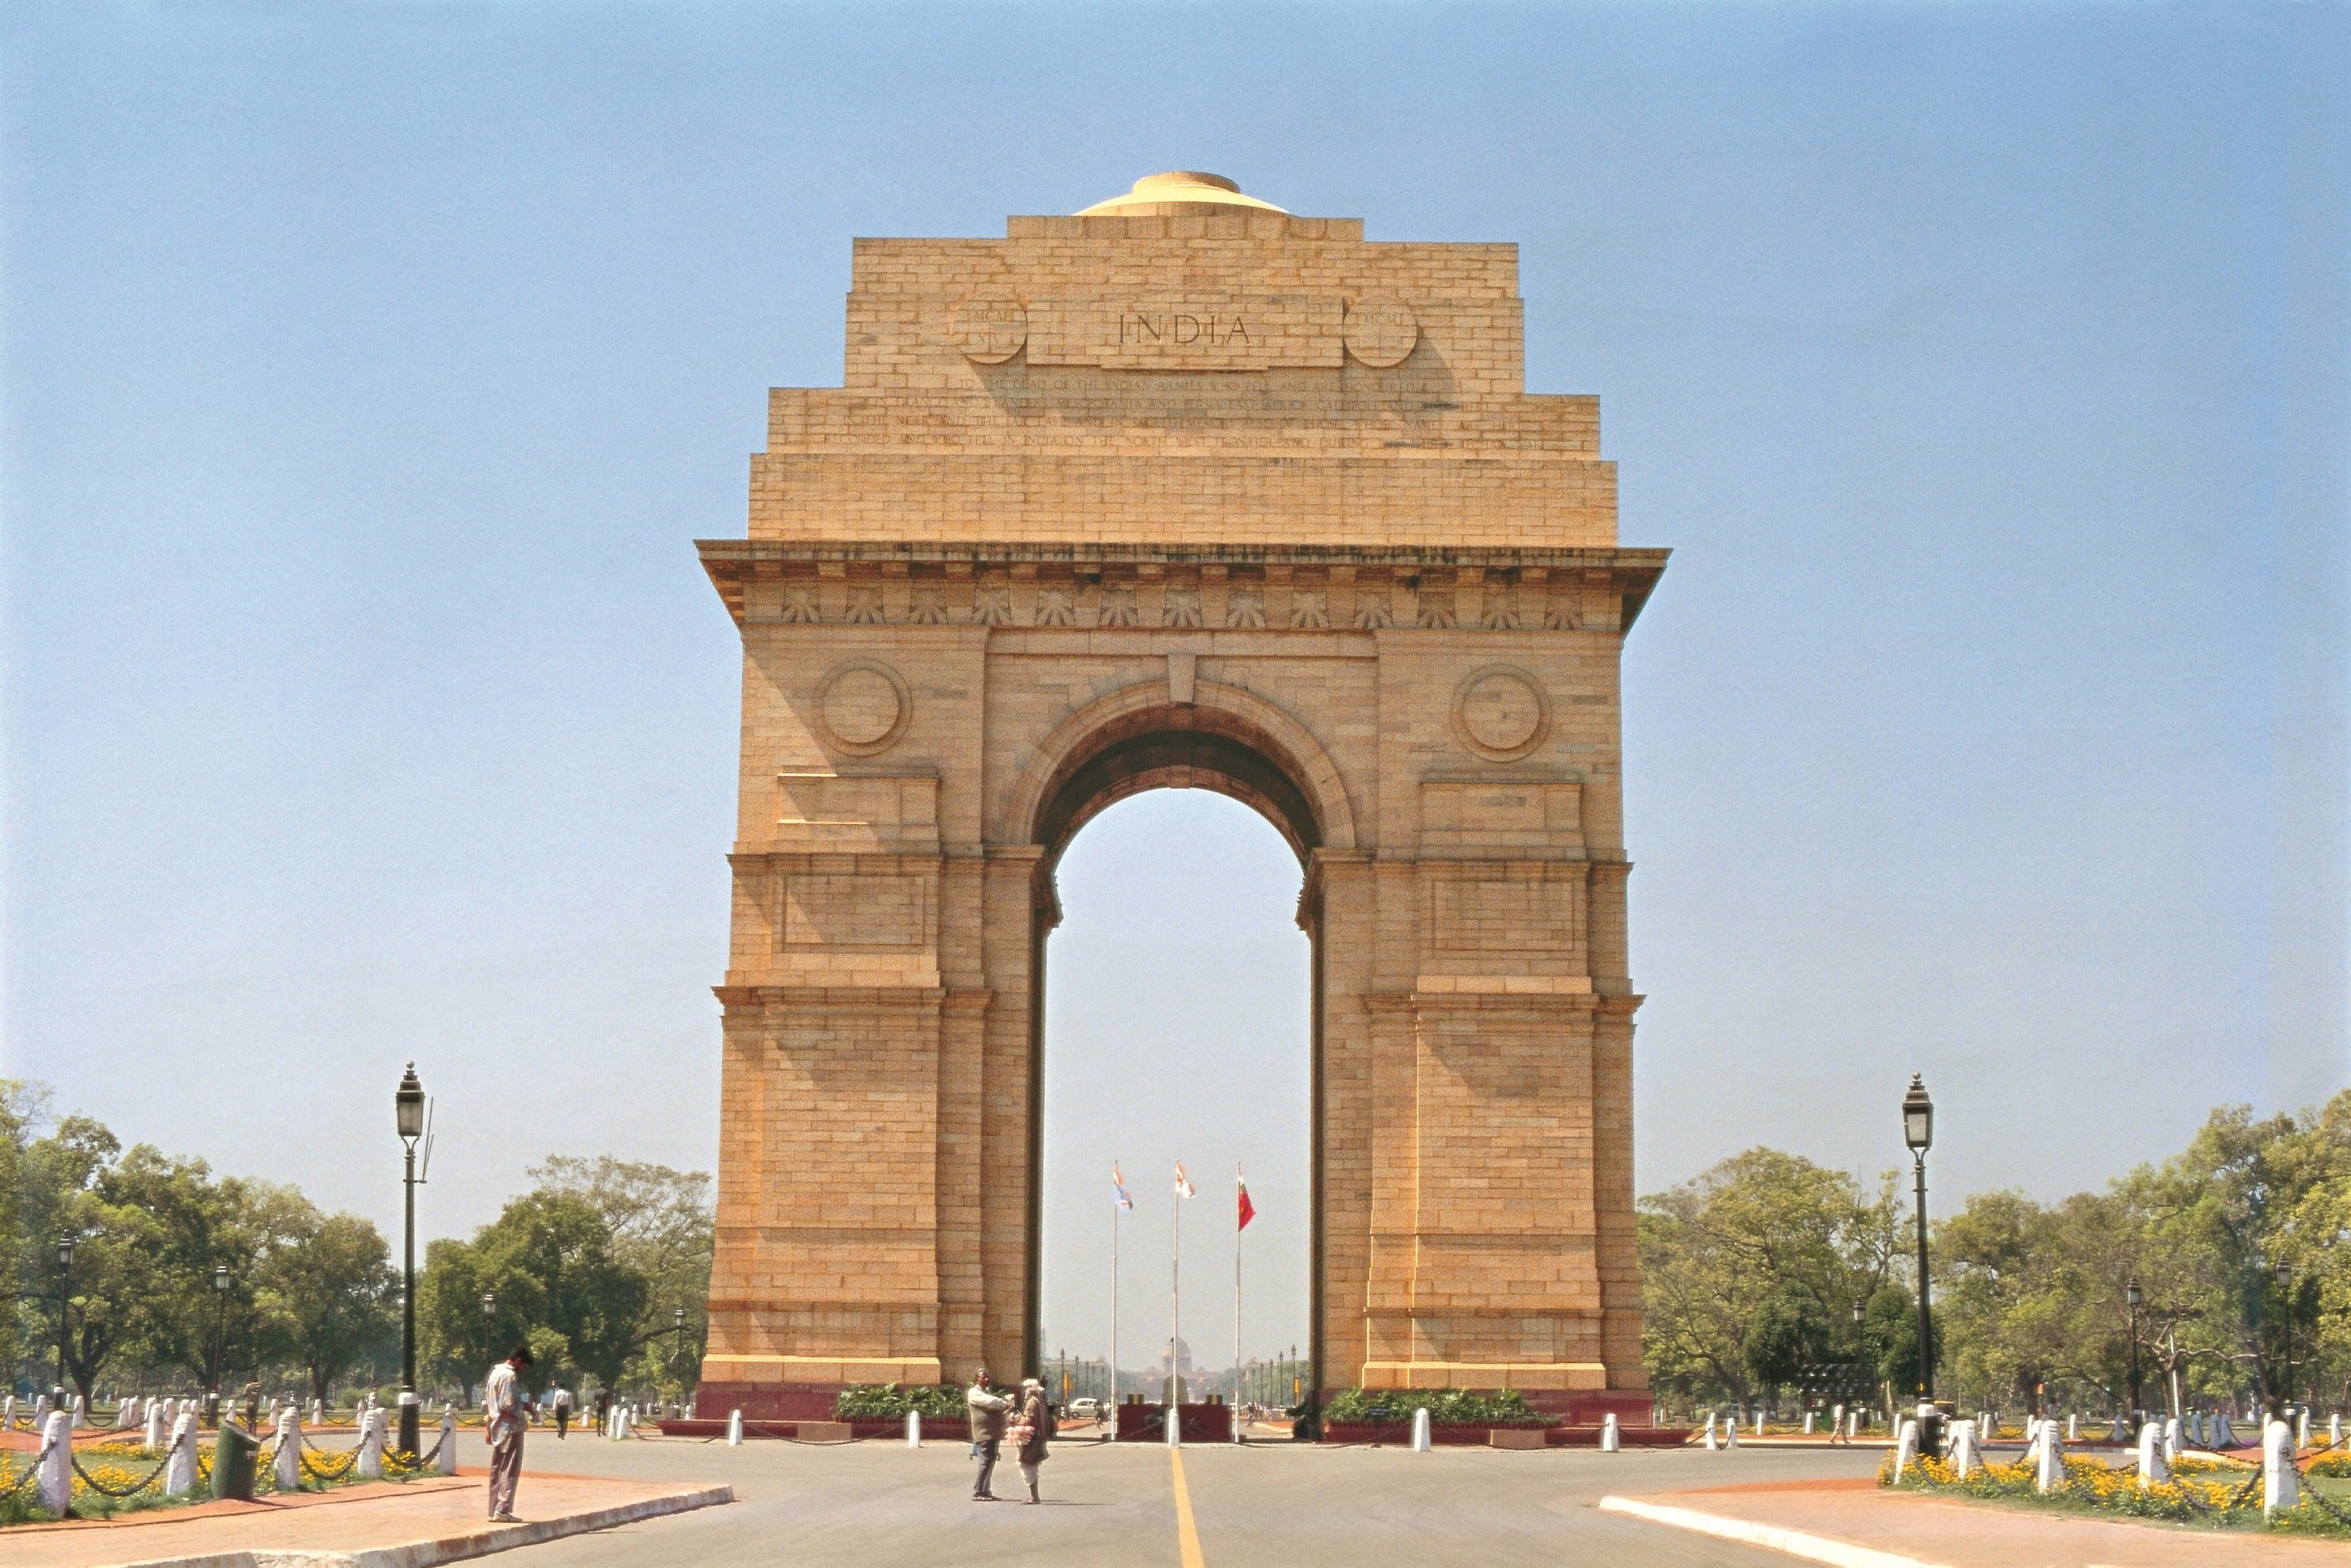 India Gate - New Delhi, Delhi